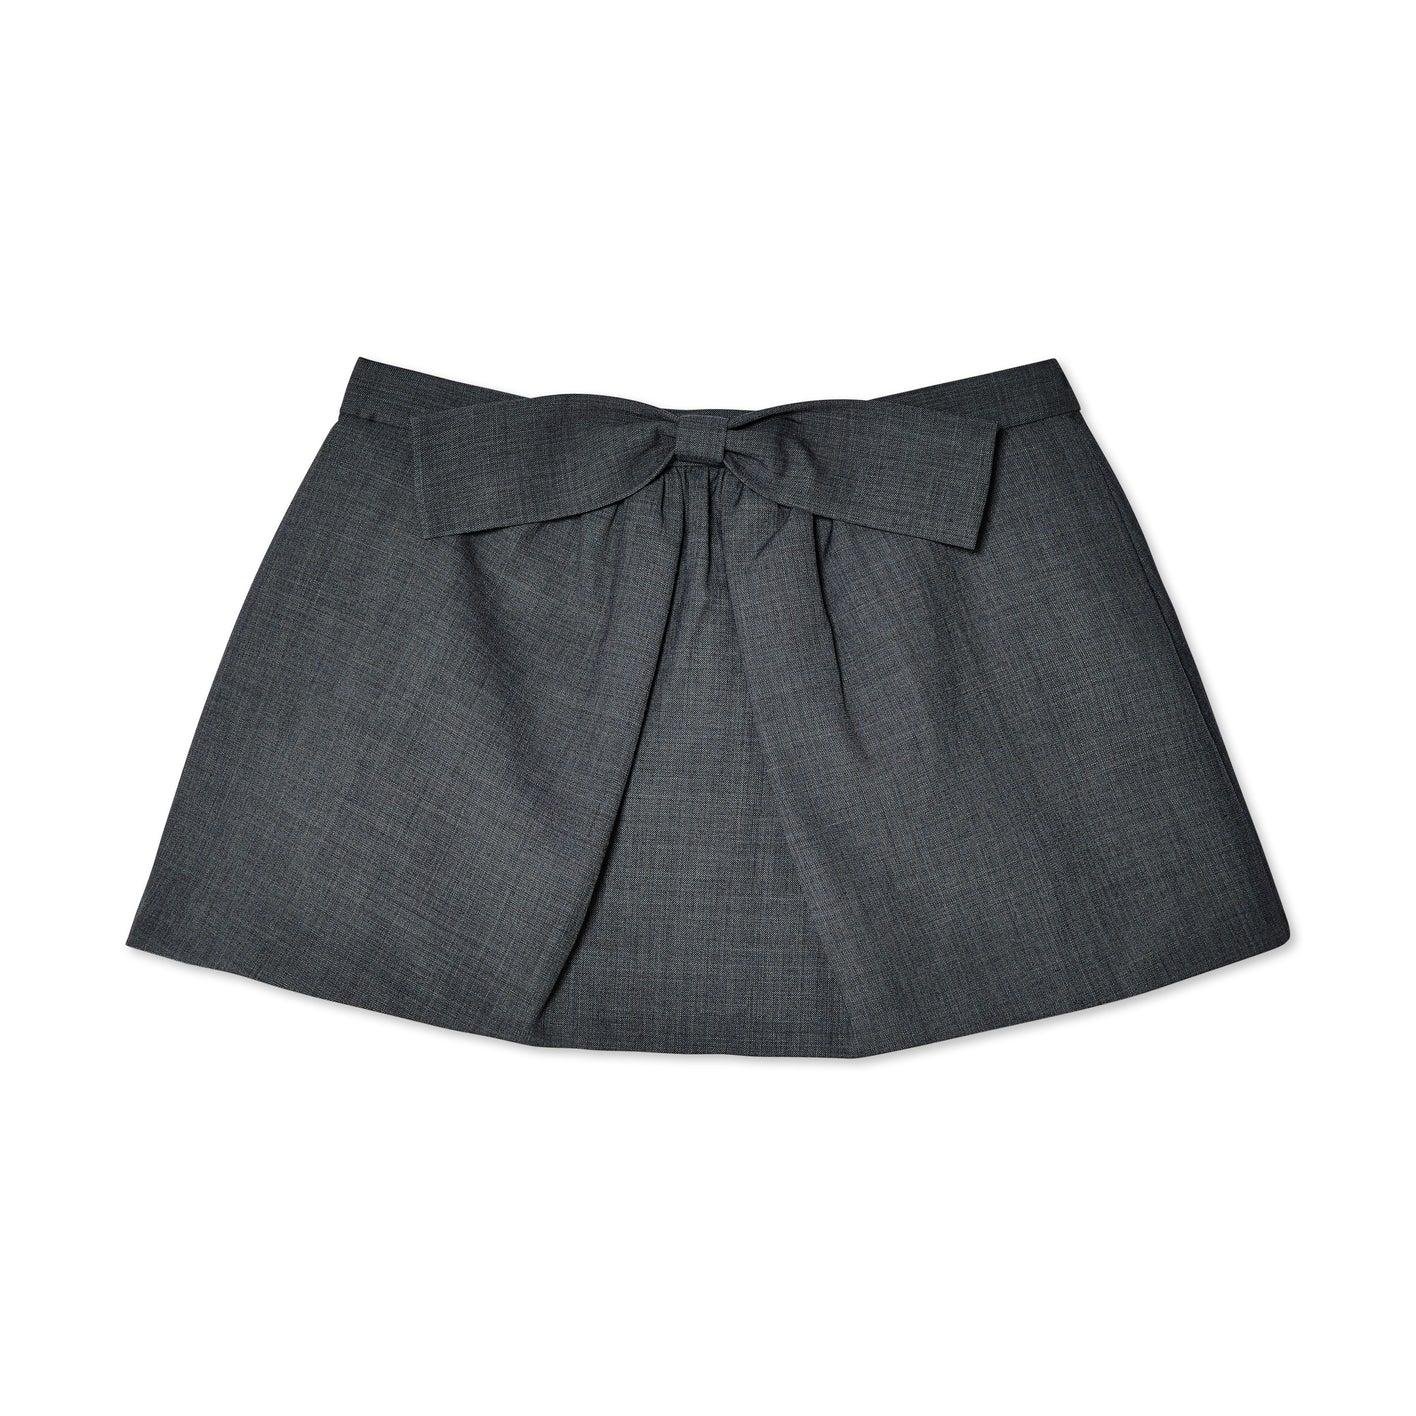 SHUSHU/TONG - Women's Bowknot Pleated Skirt - (Grey) by SHUSHU/TONG